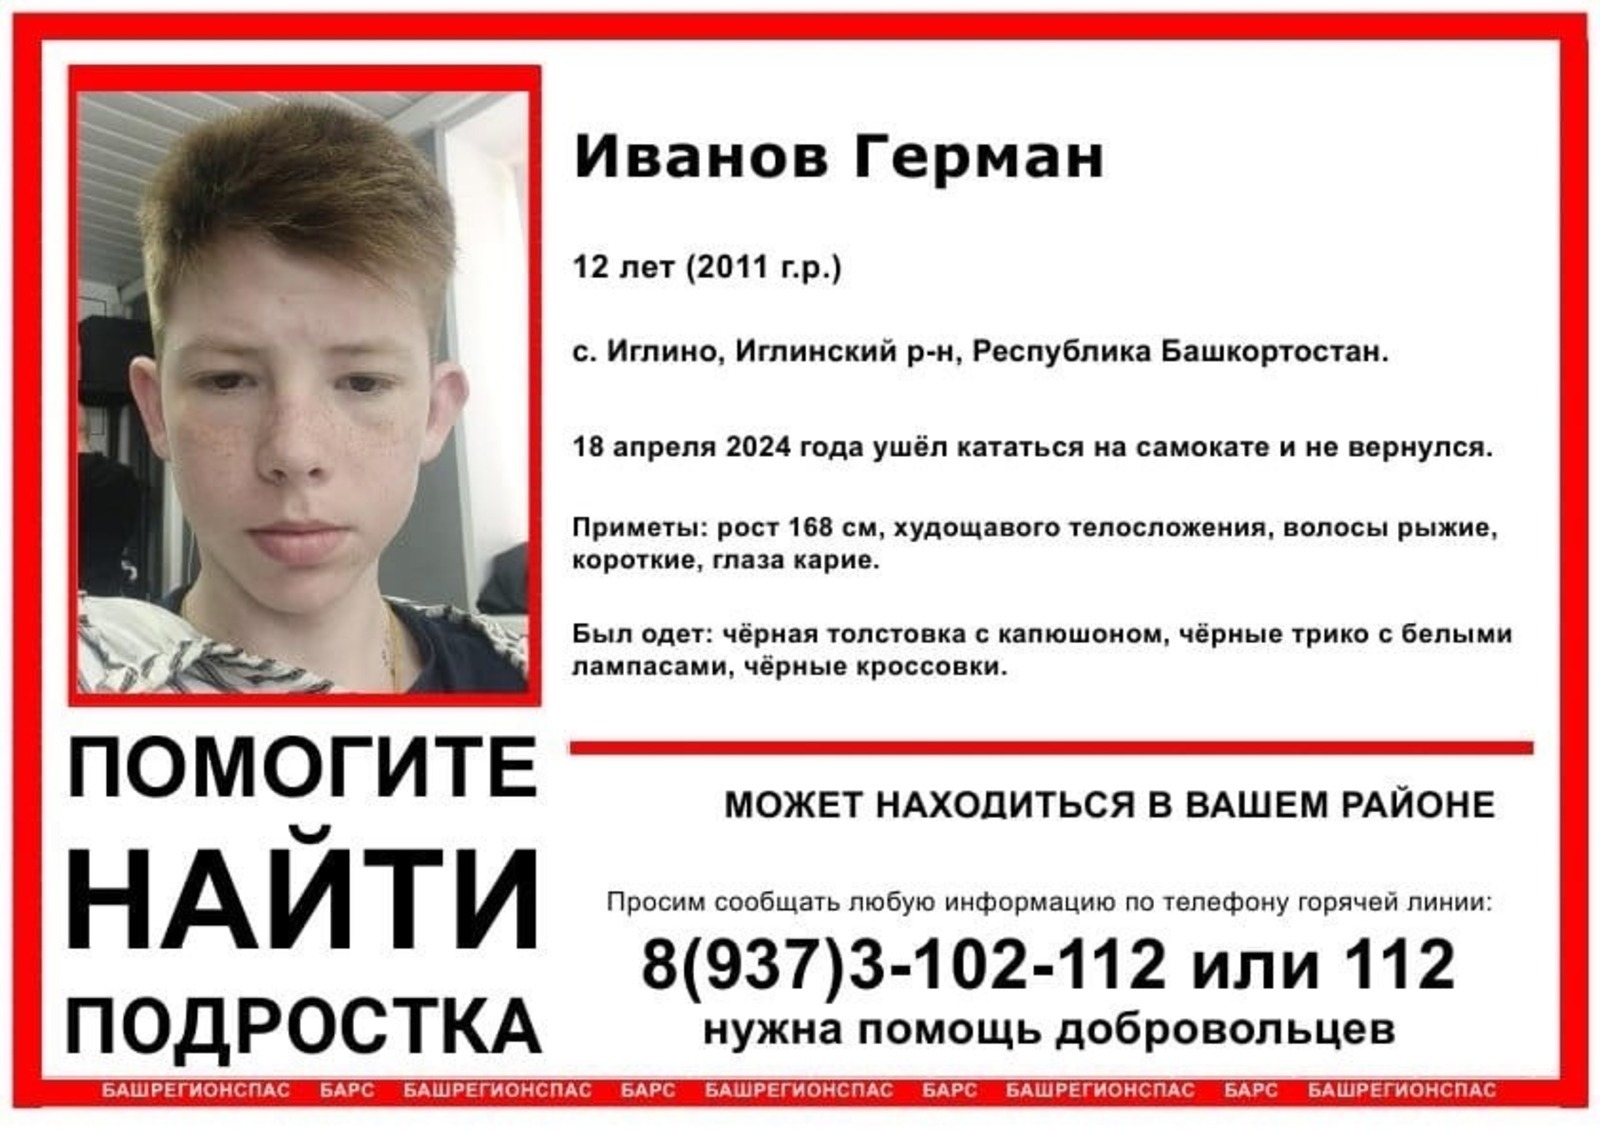 Пошел кататься на самокате и пропал: в Башкирии ищут 12-летнего Германа Иванова